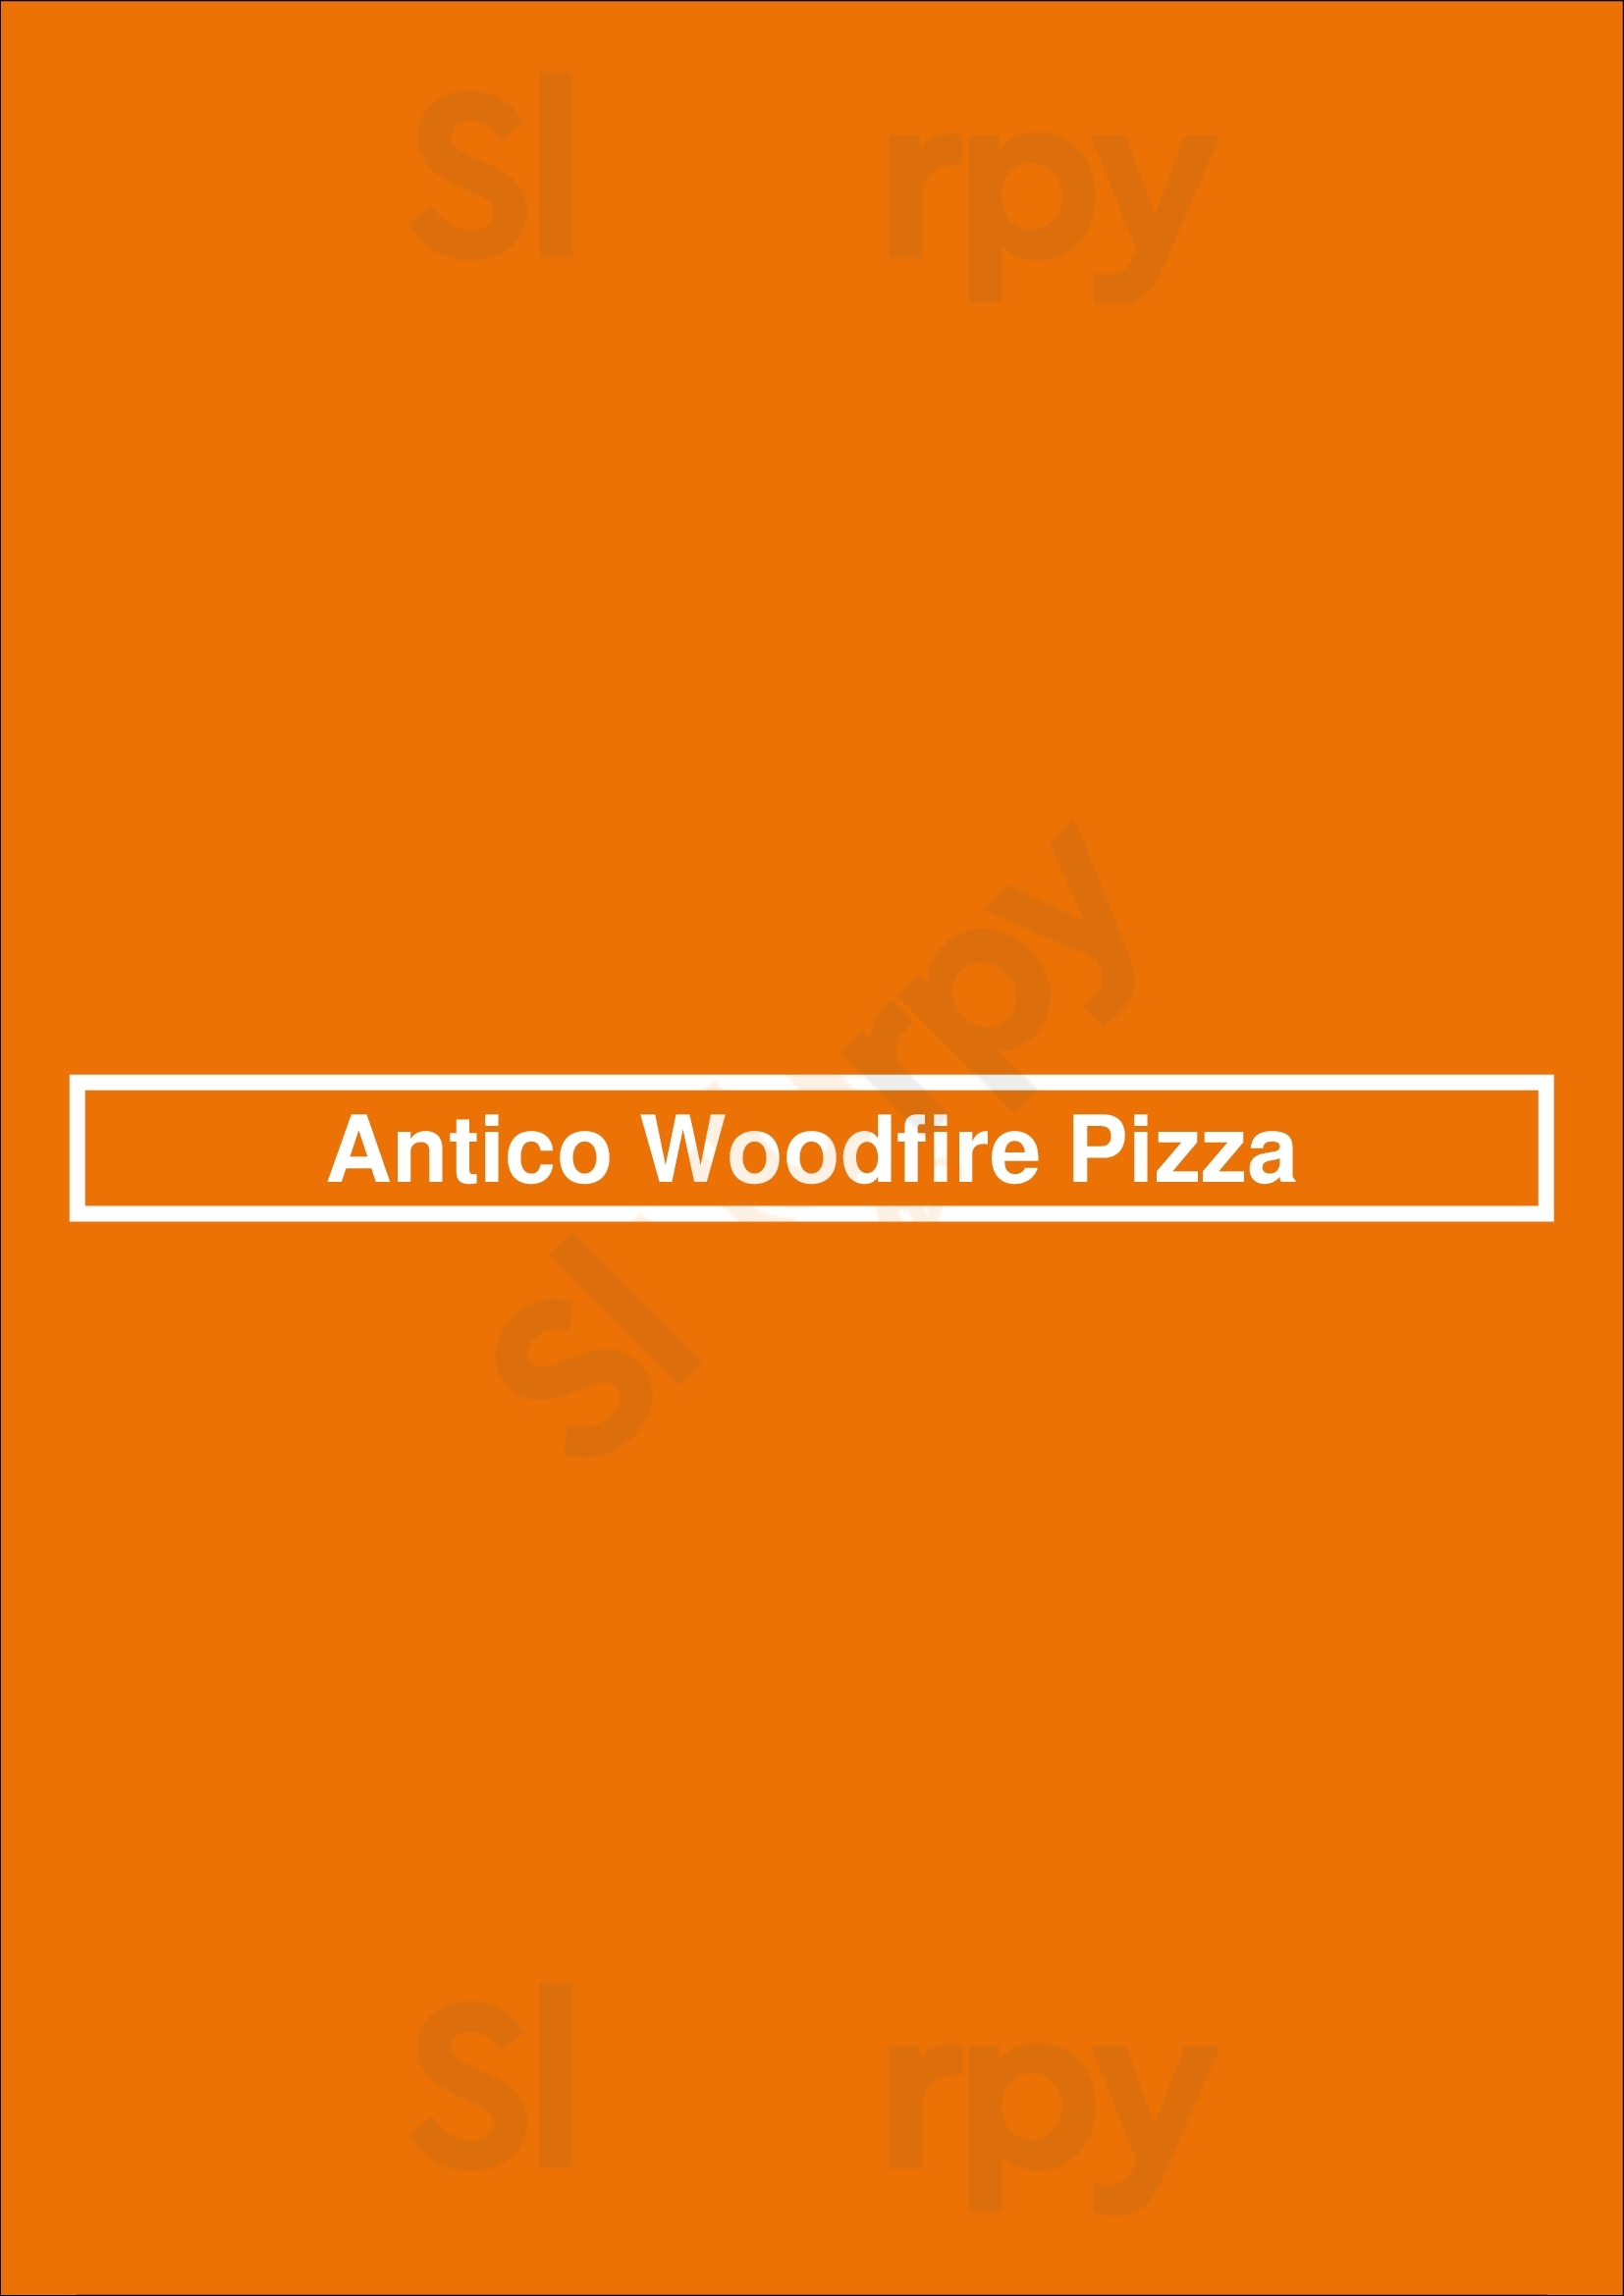 Antico Woodfire Pizza Narellan Menu - 1